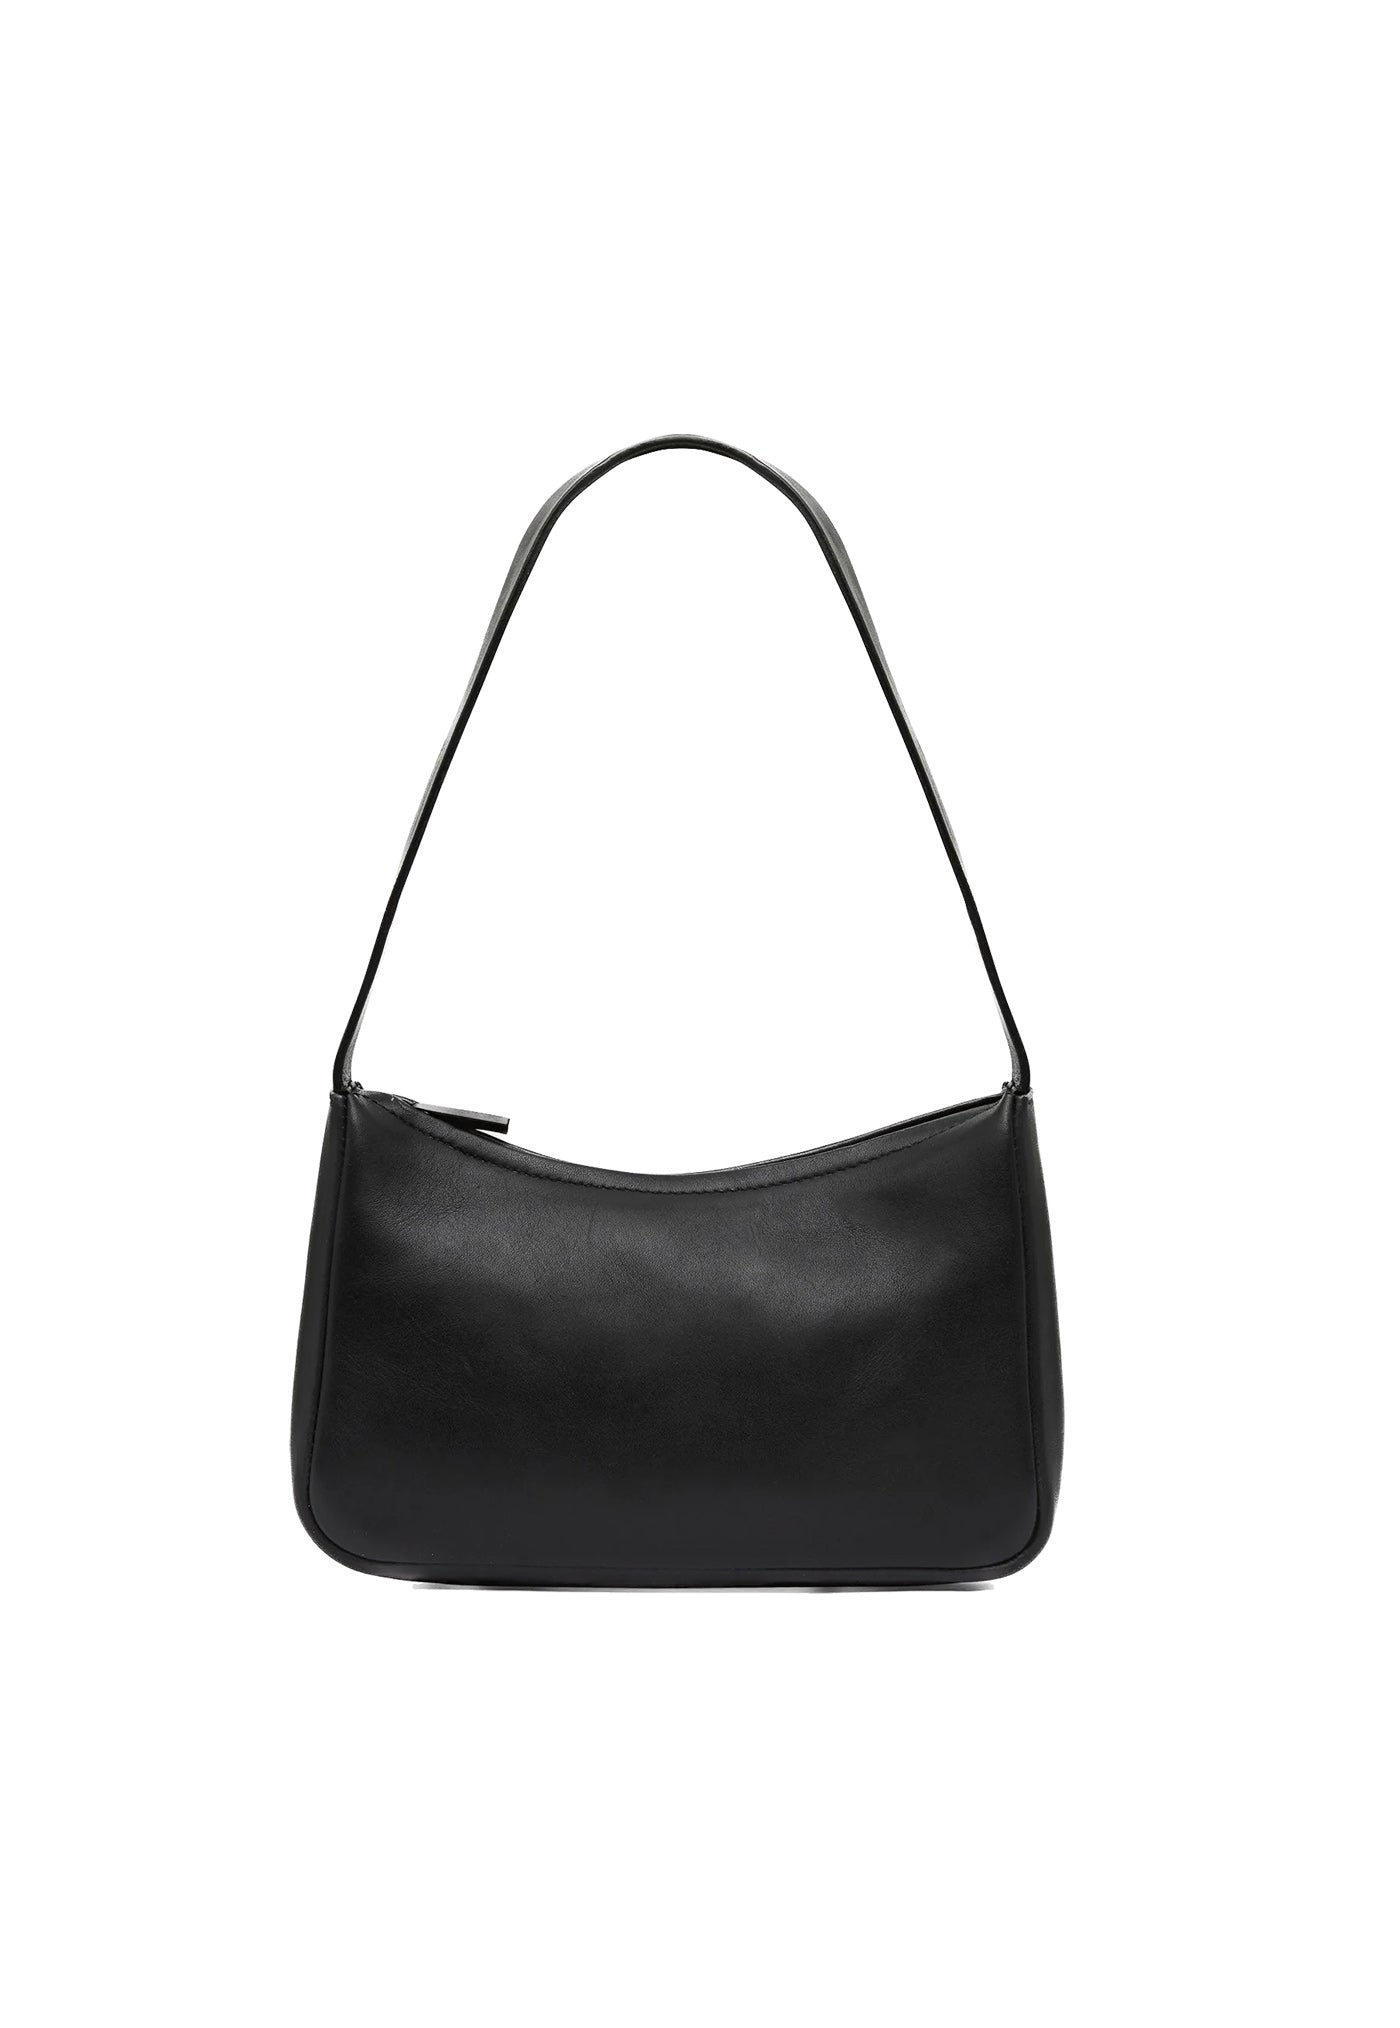 90's Petit Shoulder Bag - Black sold by Angel Divine